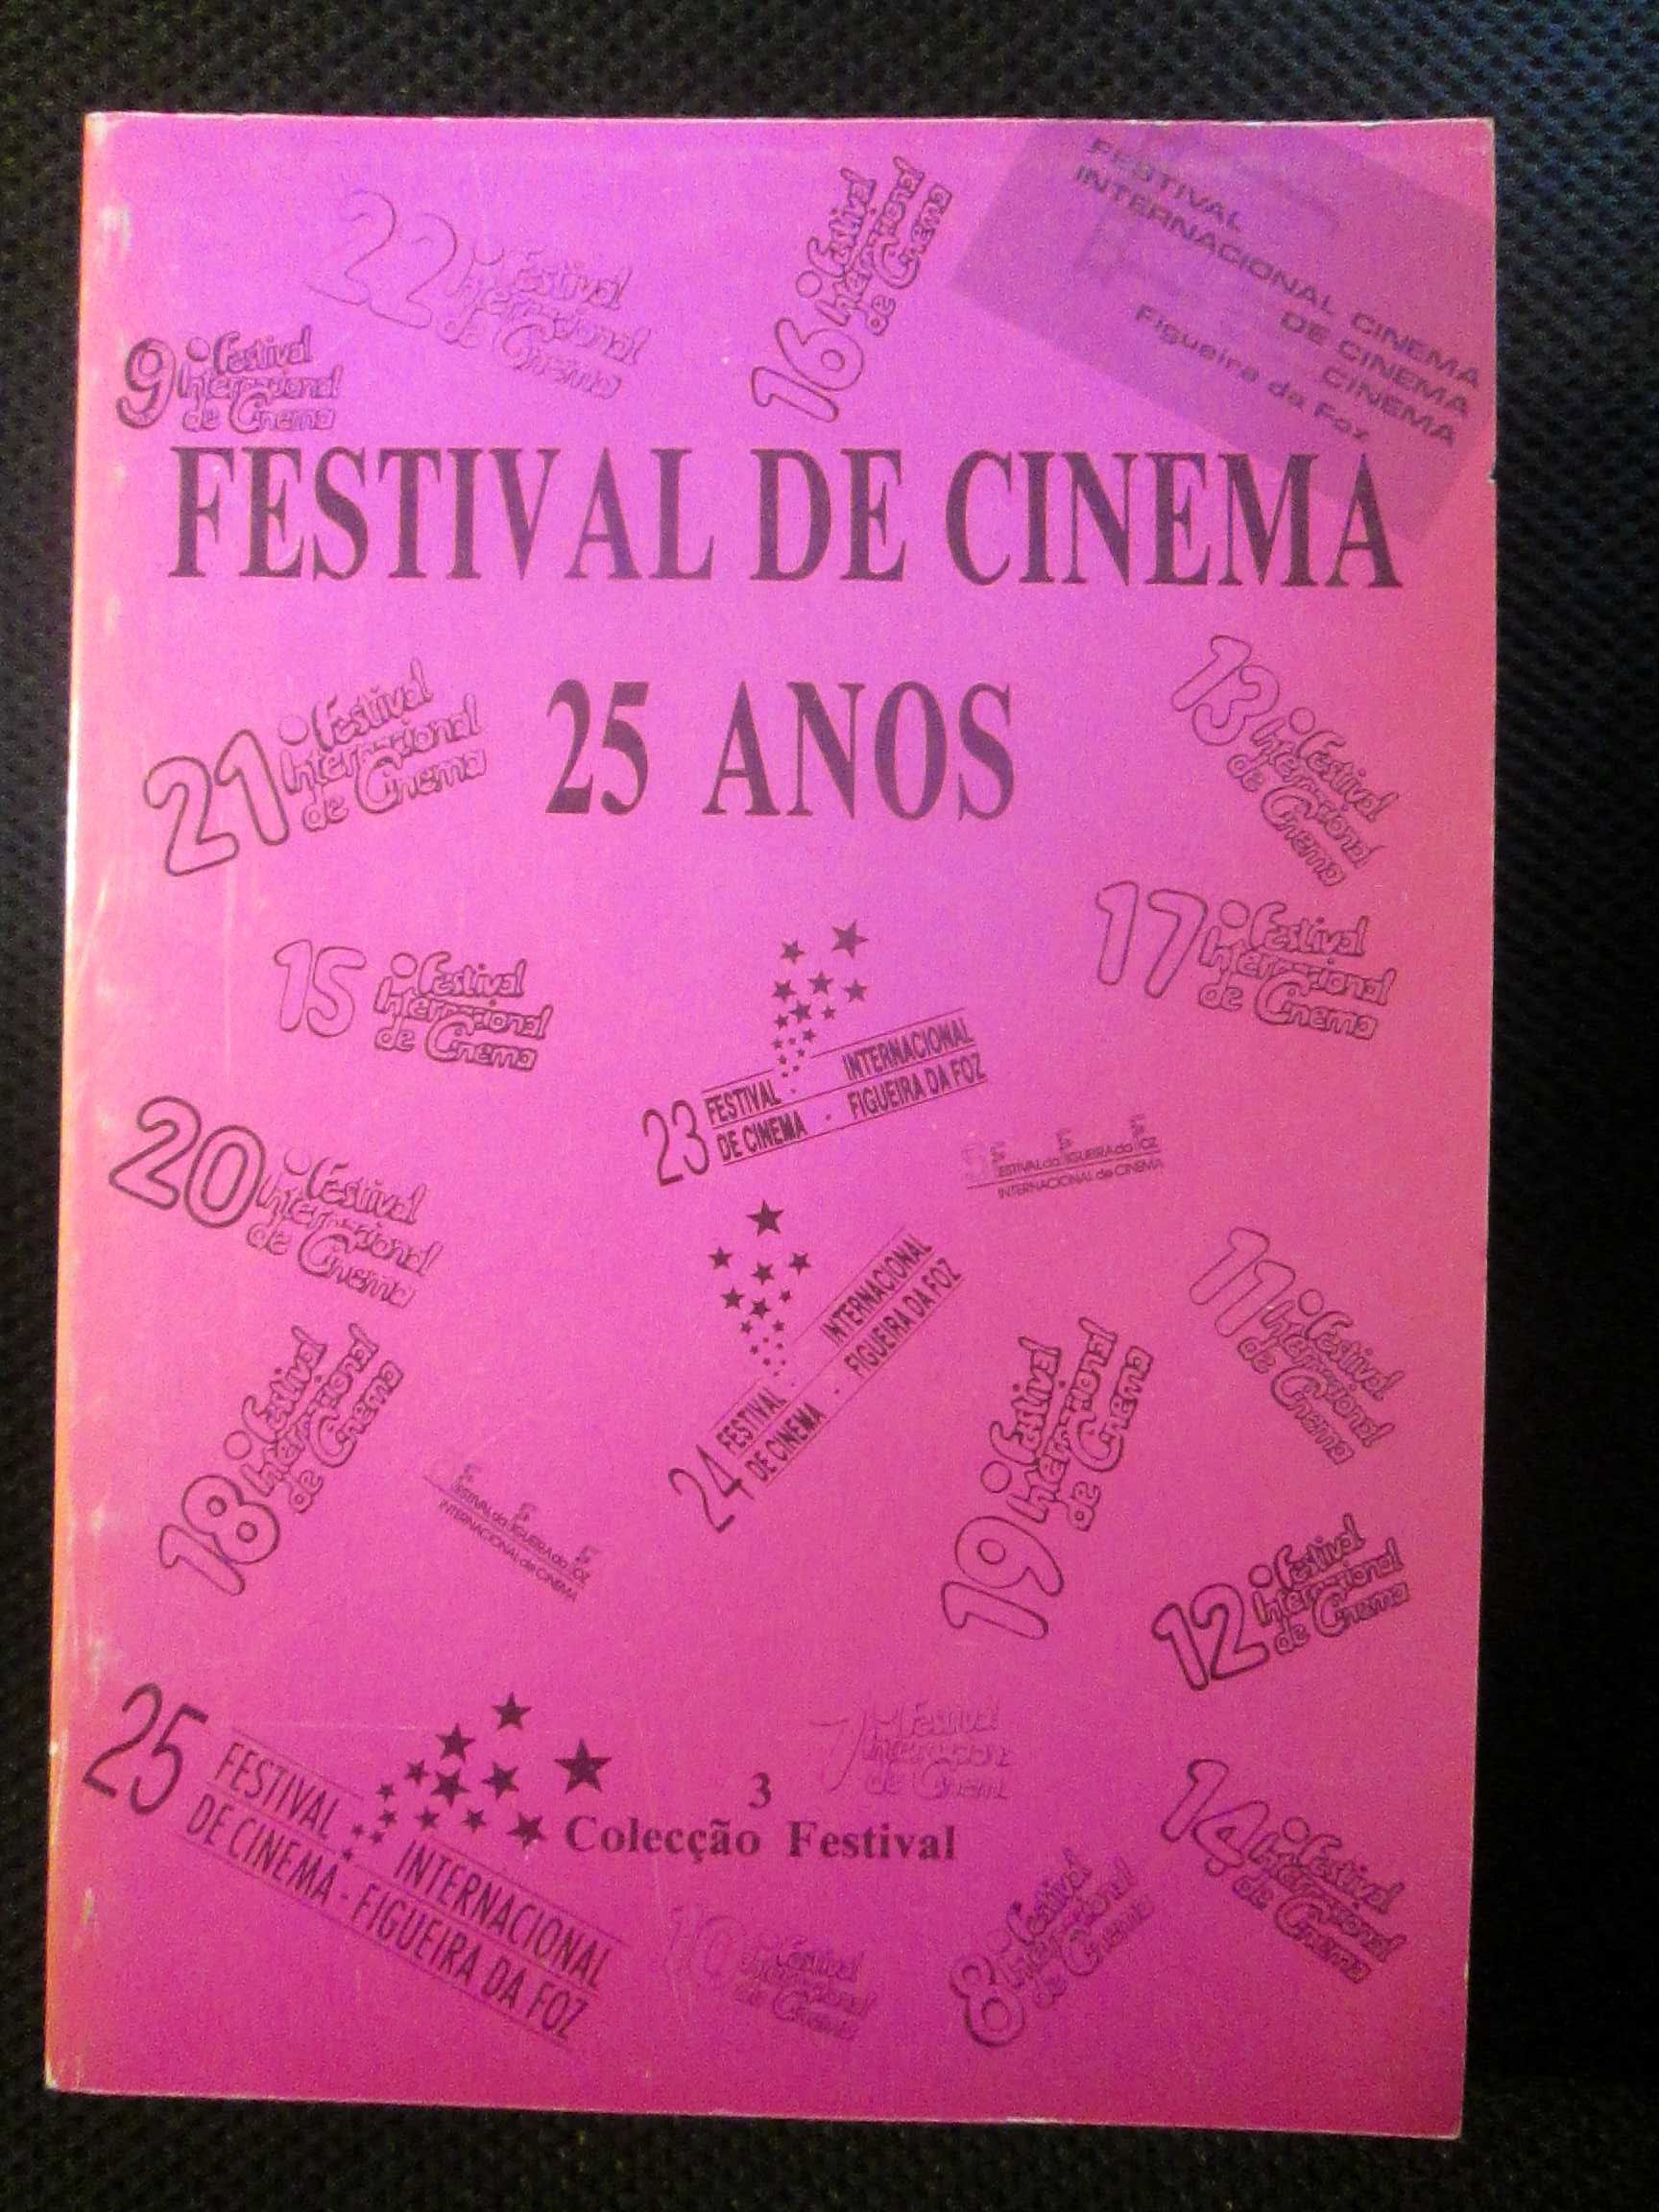 Festival de Cinema 25 anos - Festival Internacional da Figueira da Foz